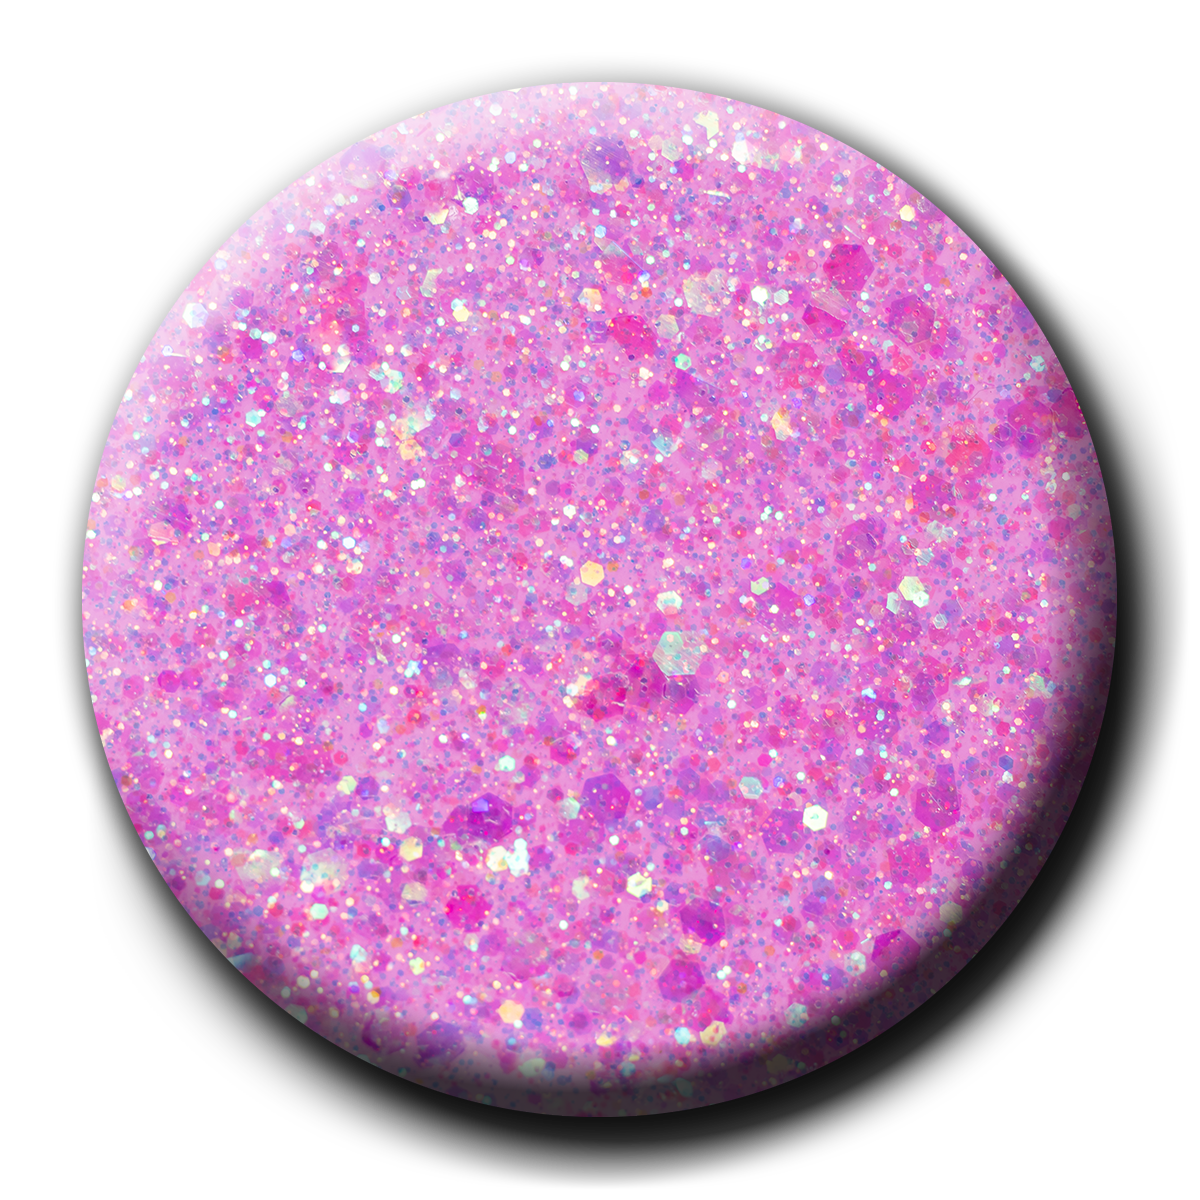 P+ Pixie Purple Glitter Gel Polish, 15 ml